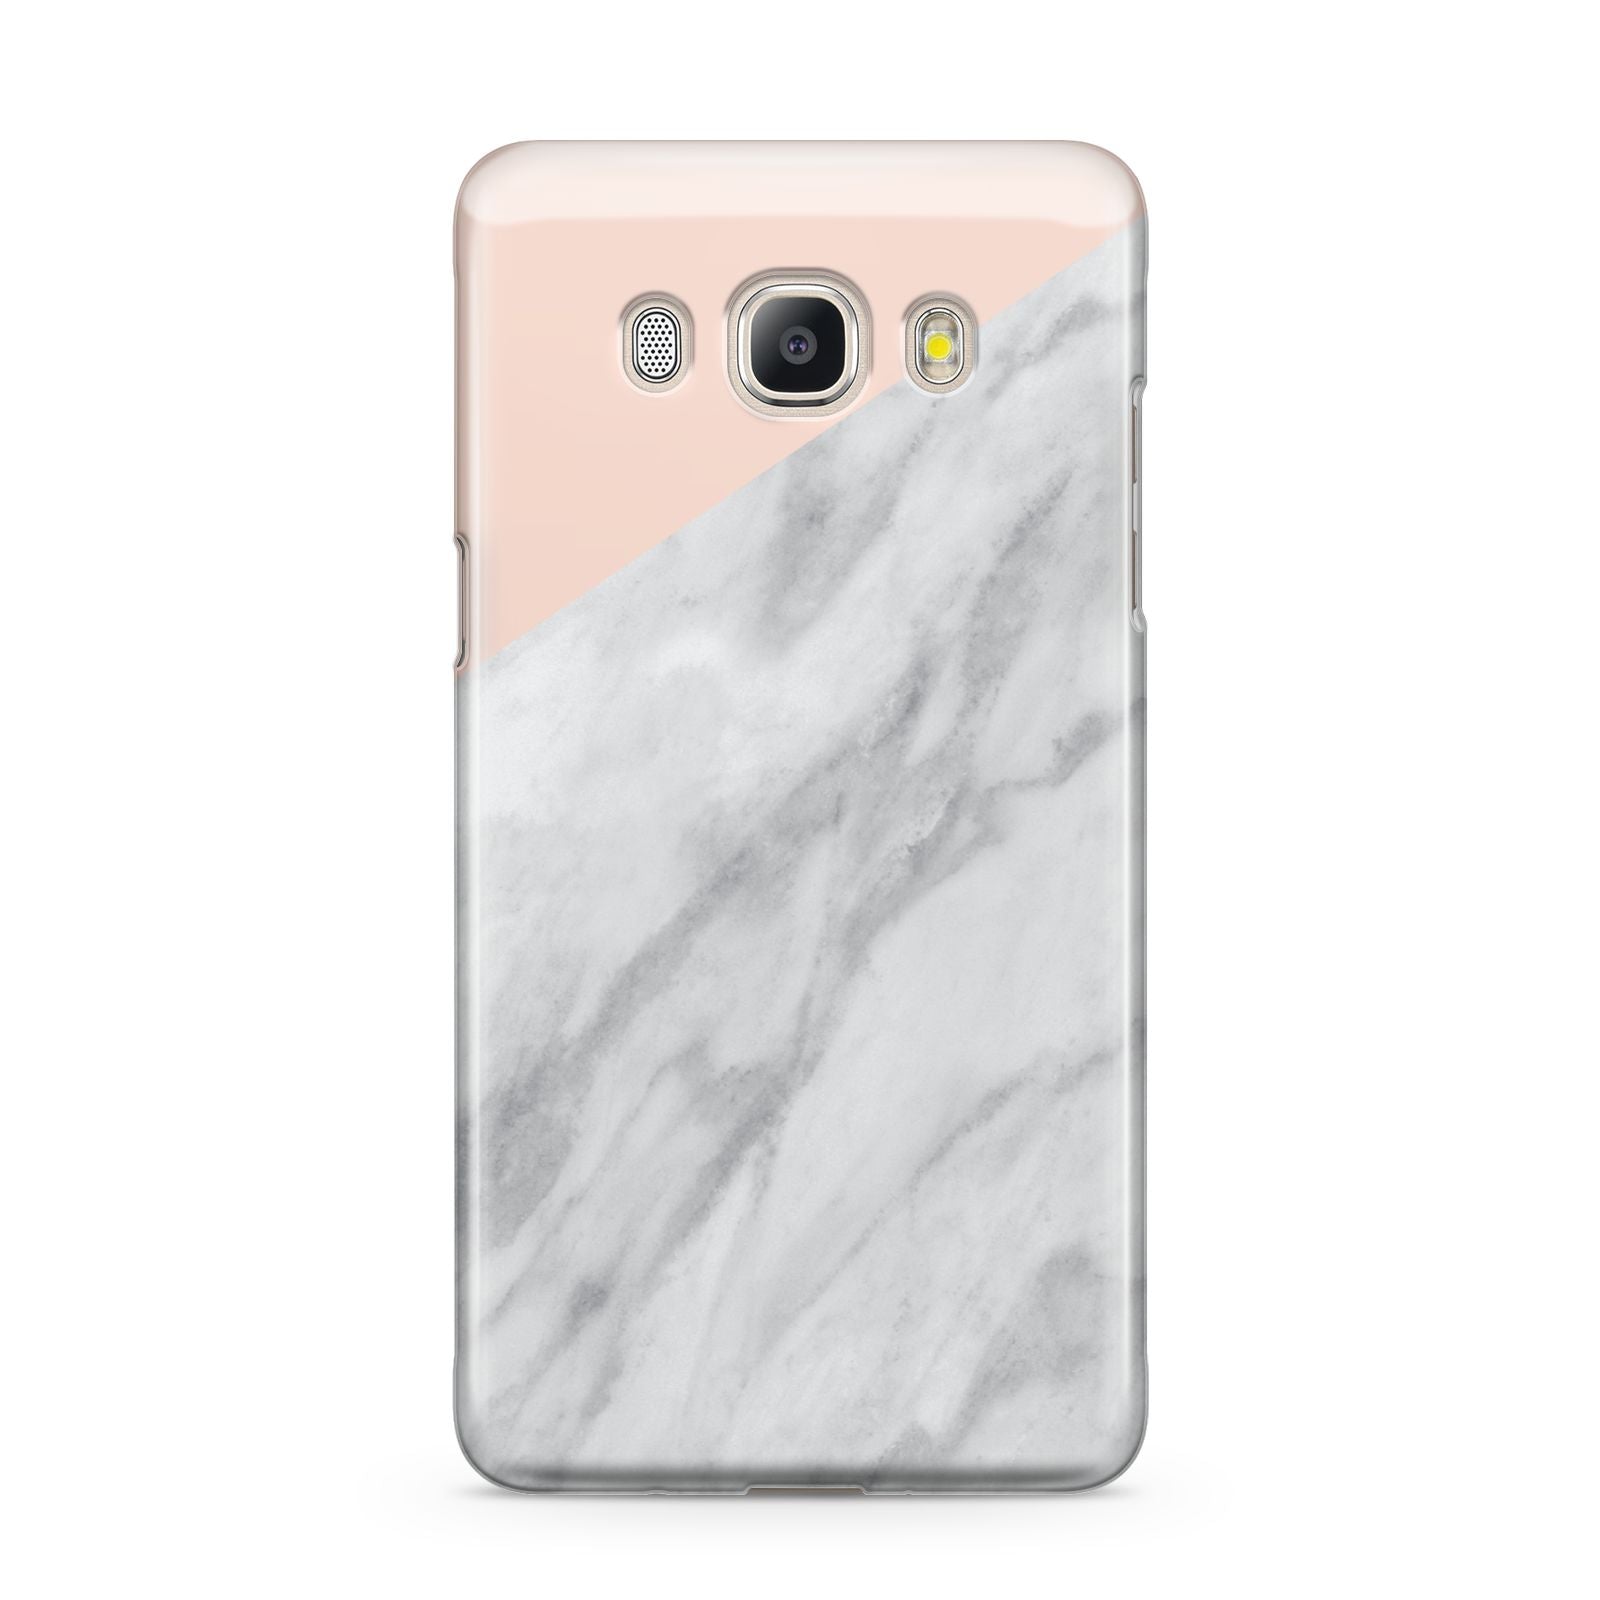 Marble Pink White Grey Samsung Galaxy J5 2016 Case